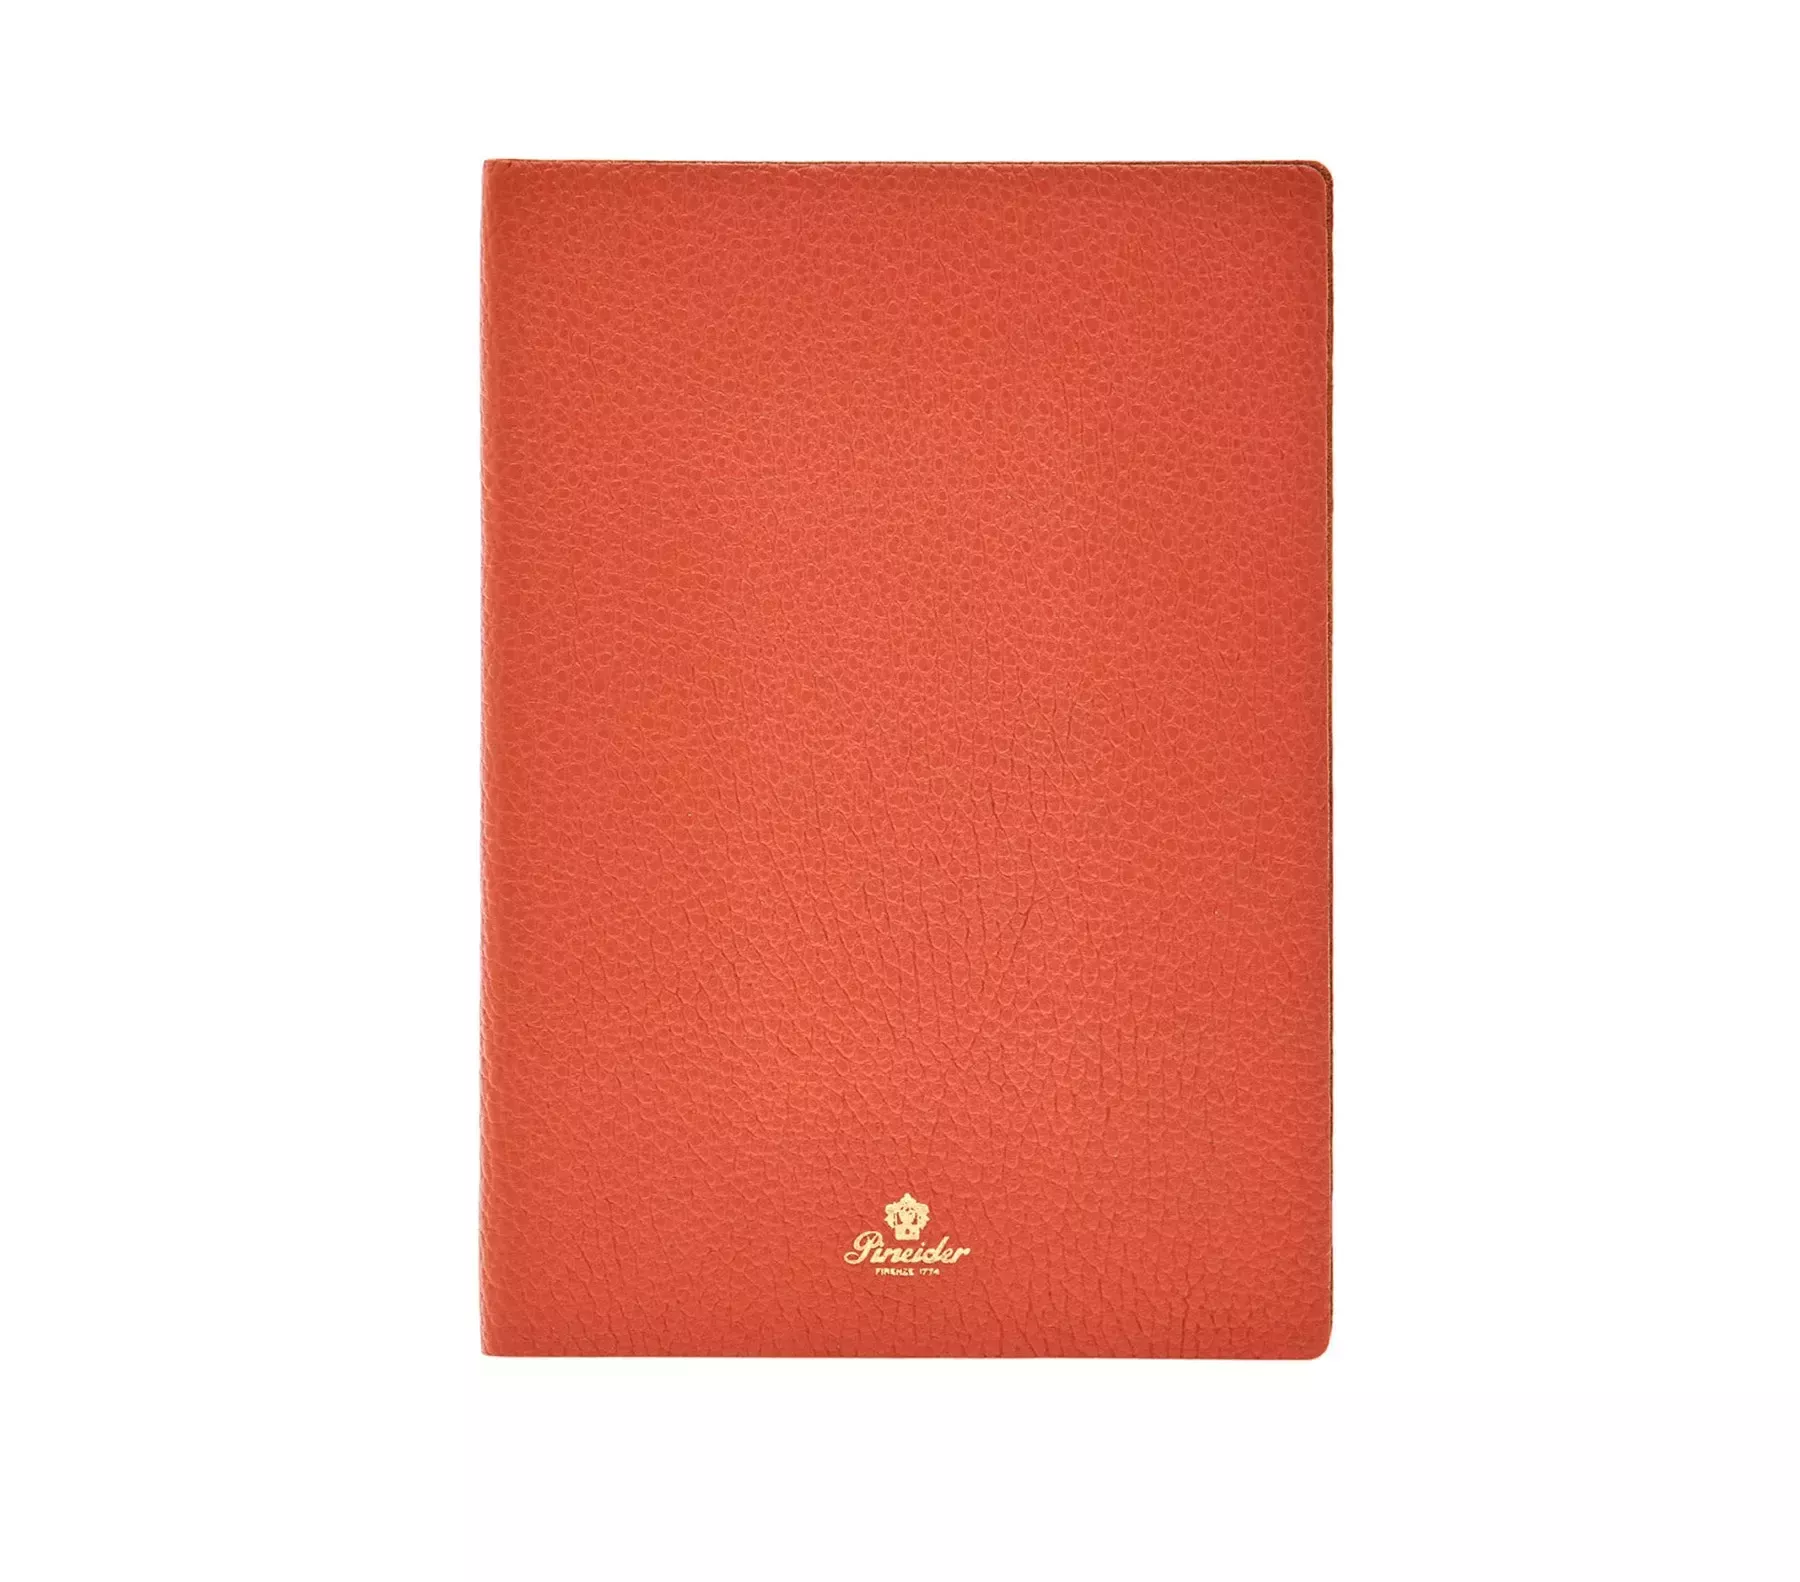 Notebook Collezione Medio senza righe